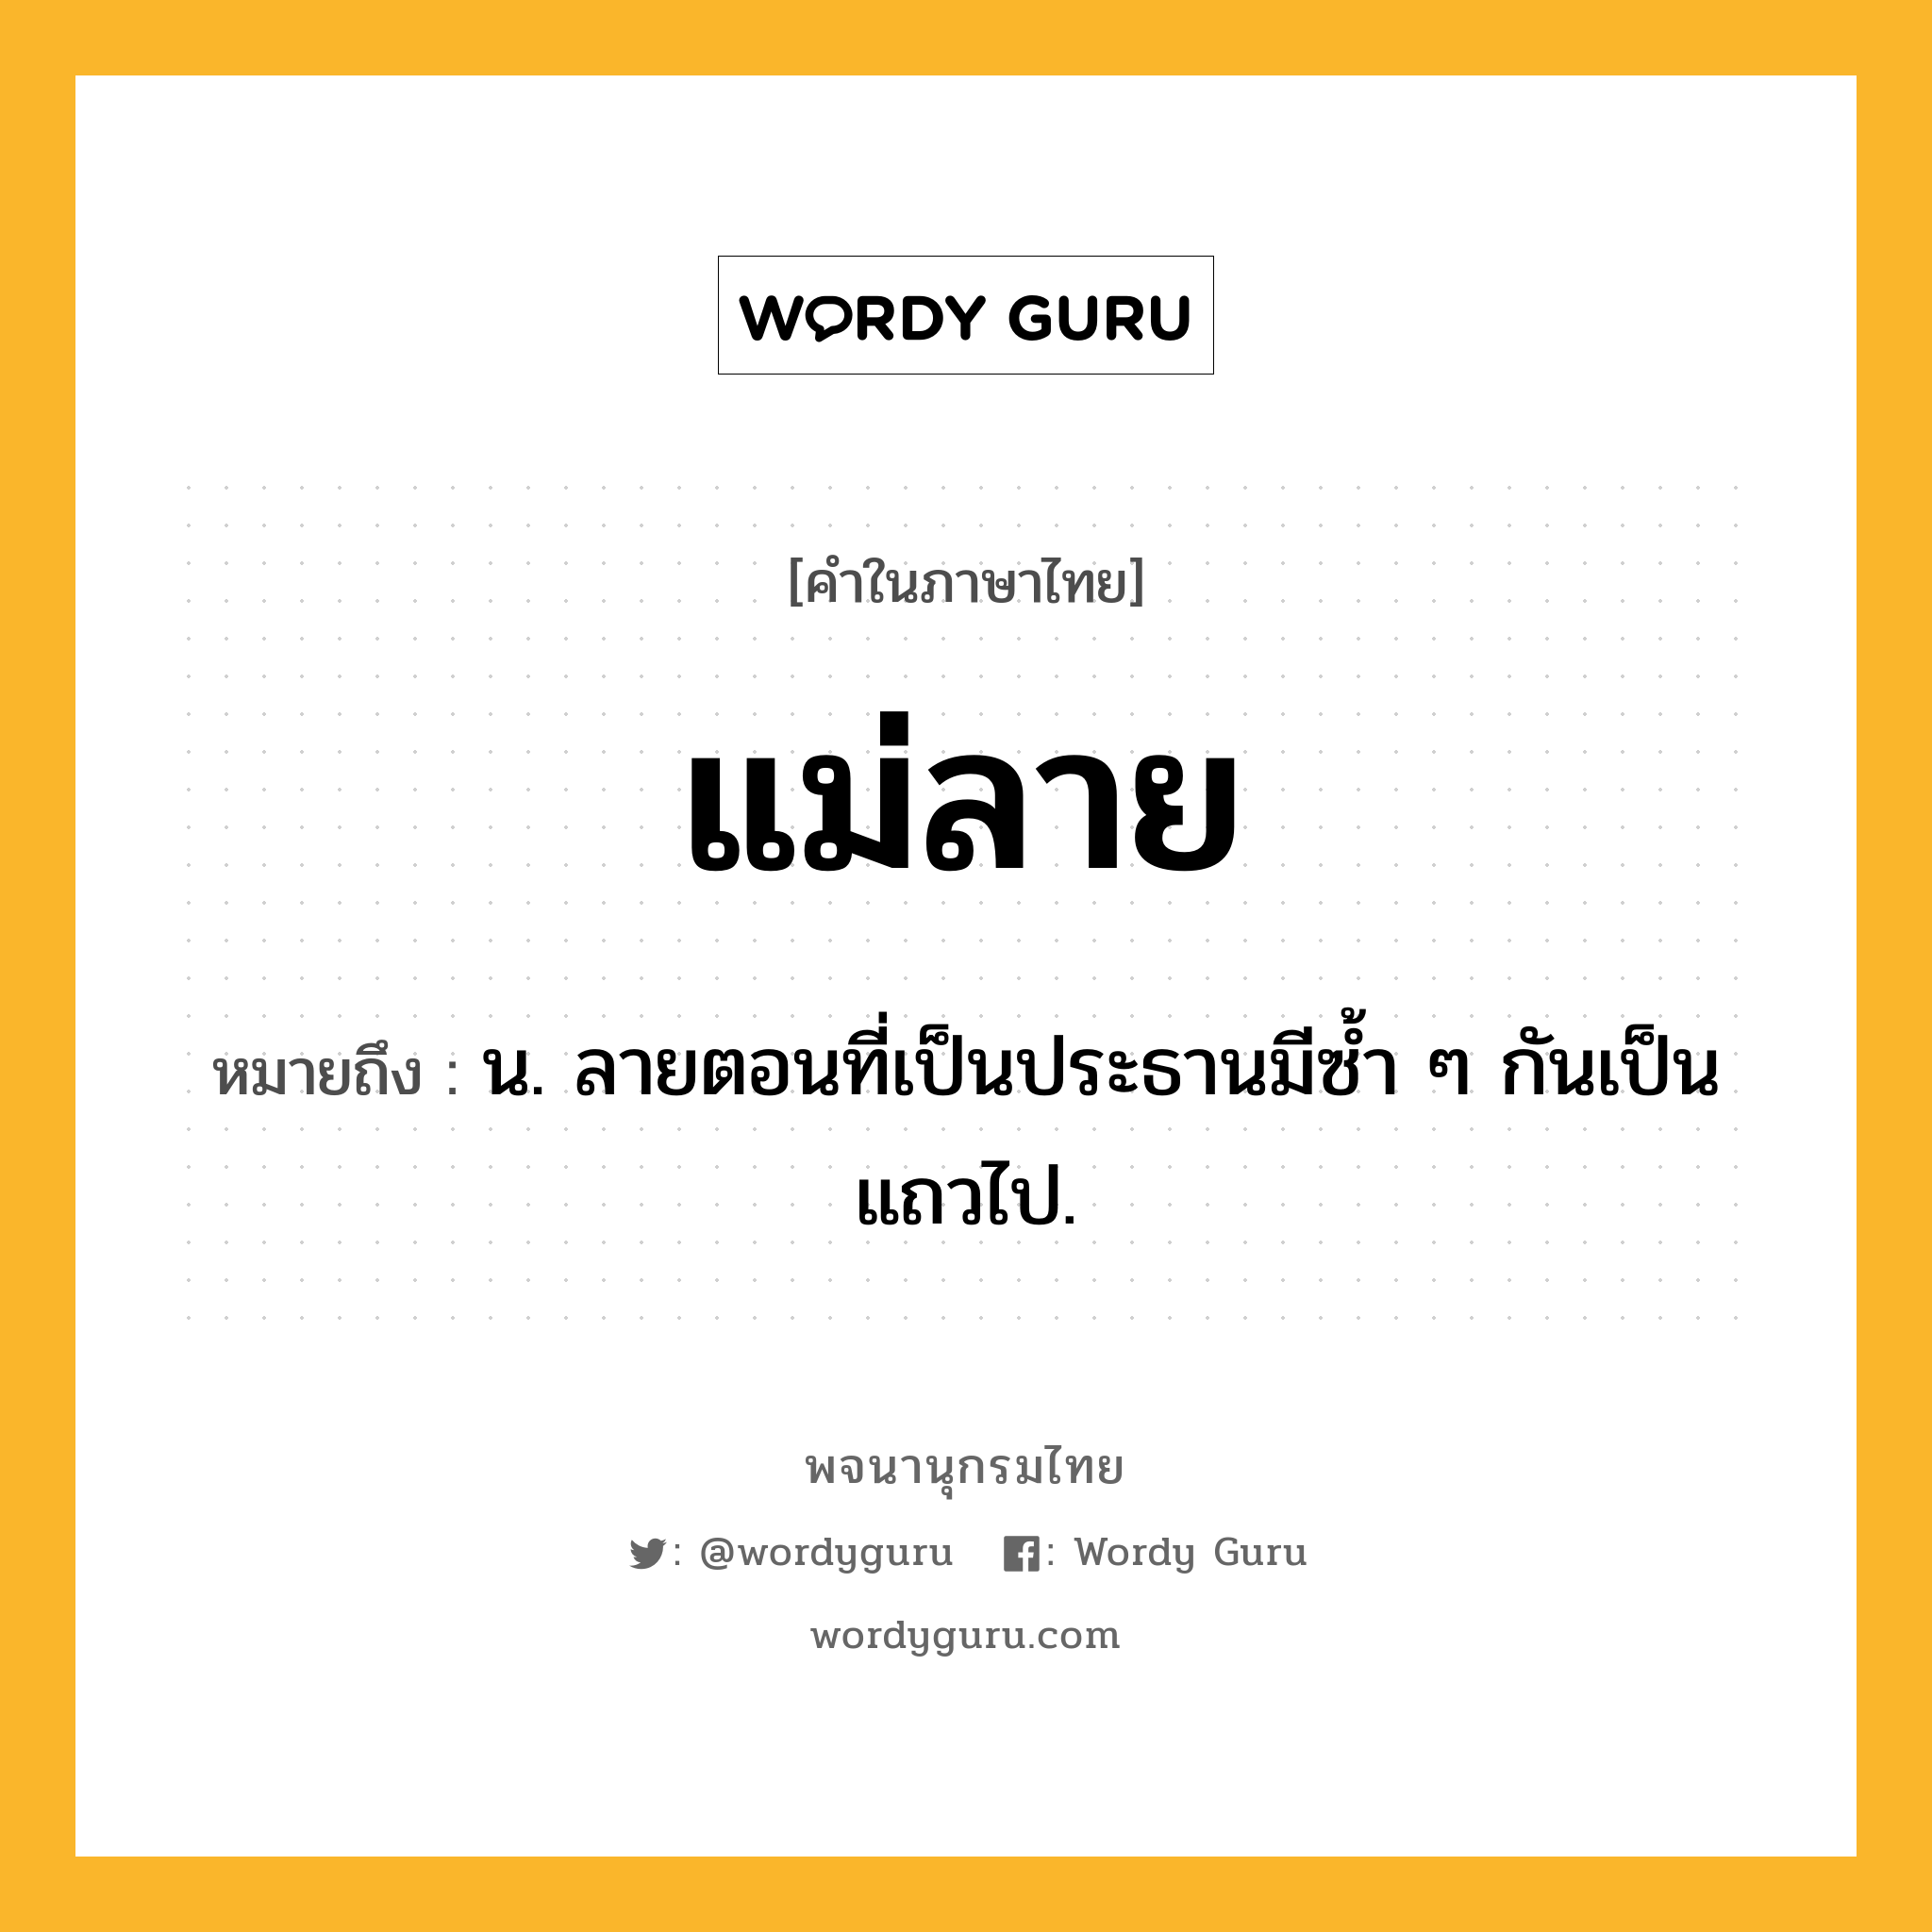 แม่ลาย หมายถึงอะไร?, คำในภาษาไทย แม่ลาย หมายถึง น. ลายตอนที่เป็นประธานมีซํ้า ๆ กันเป็นแถวไป.